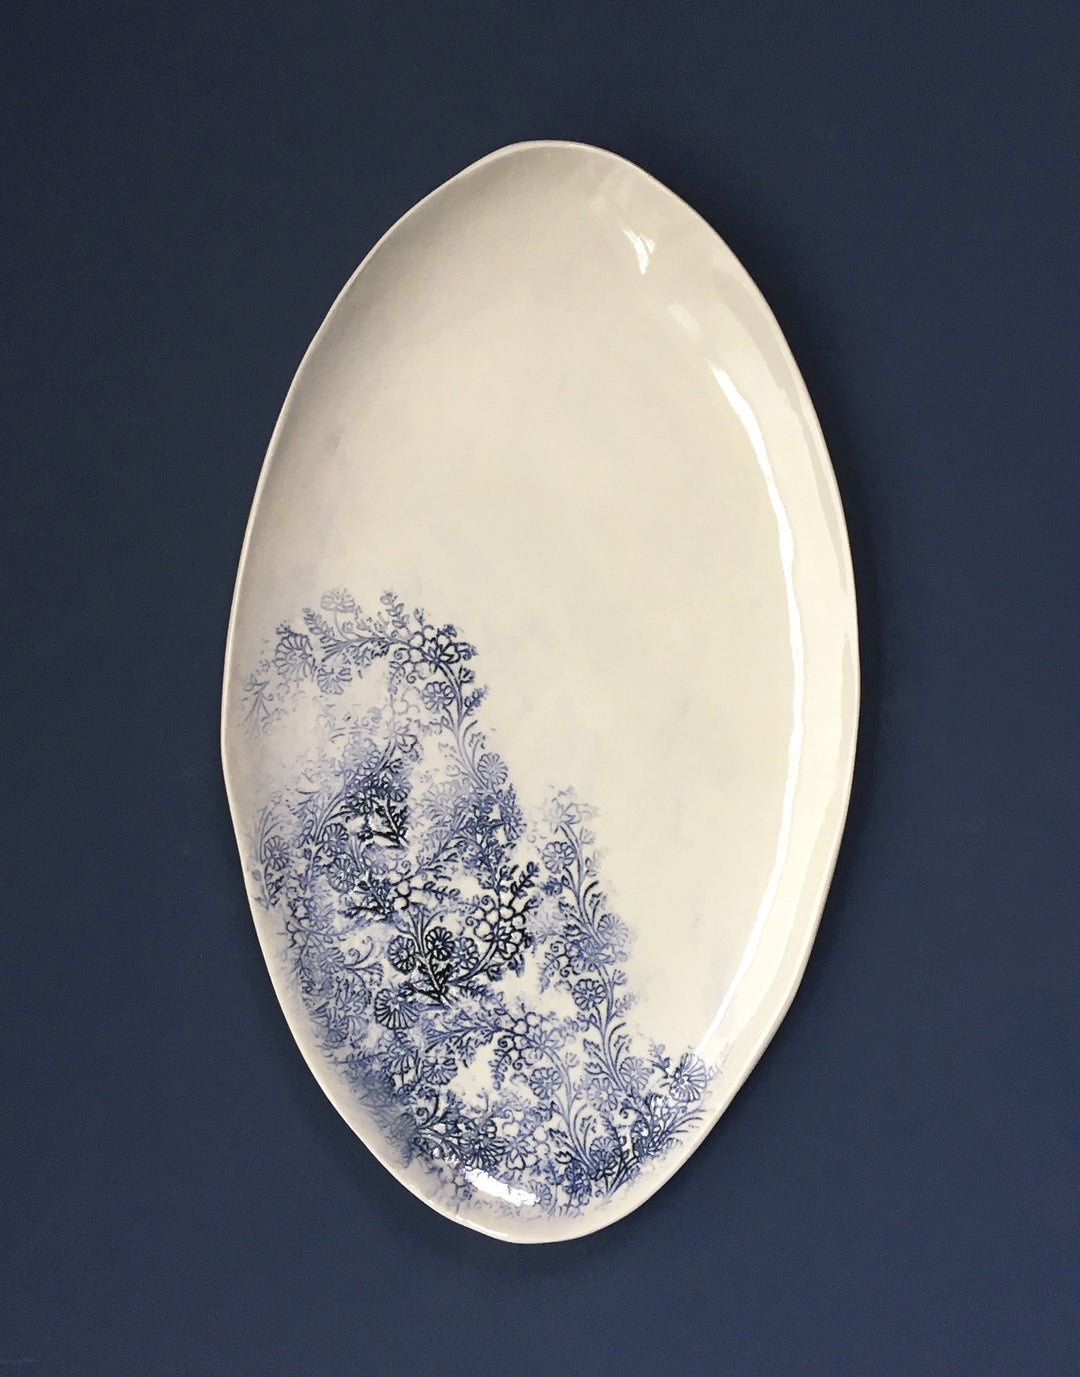 DBO HOME Handmade Porcelain Small Oval Serving Platter